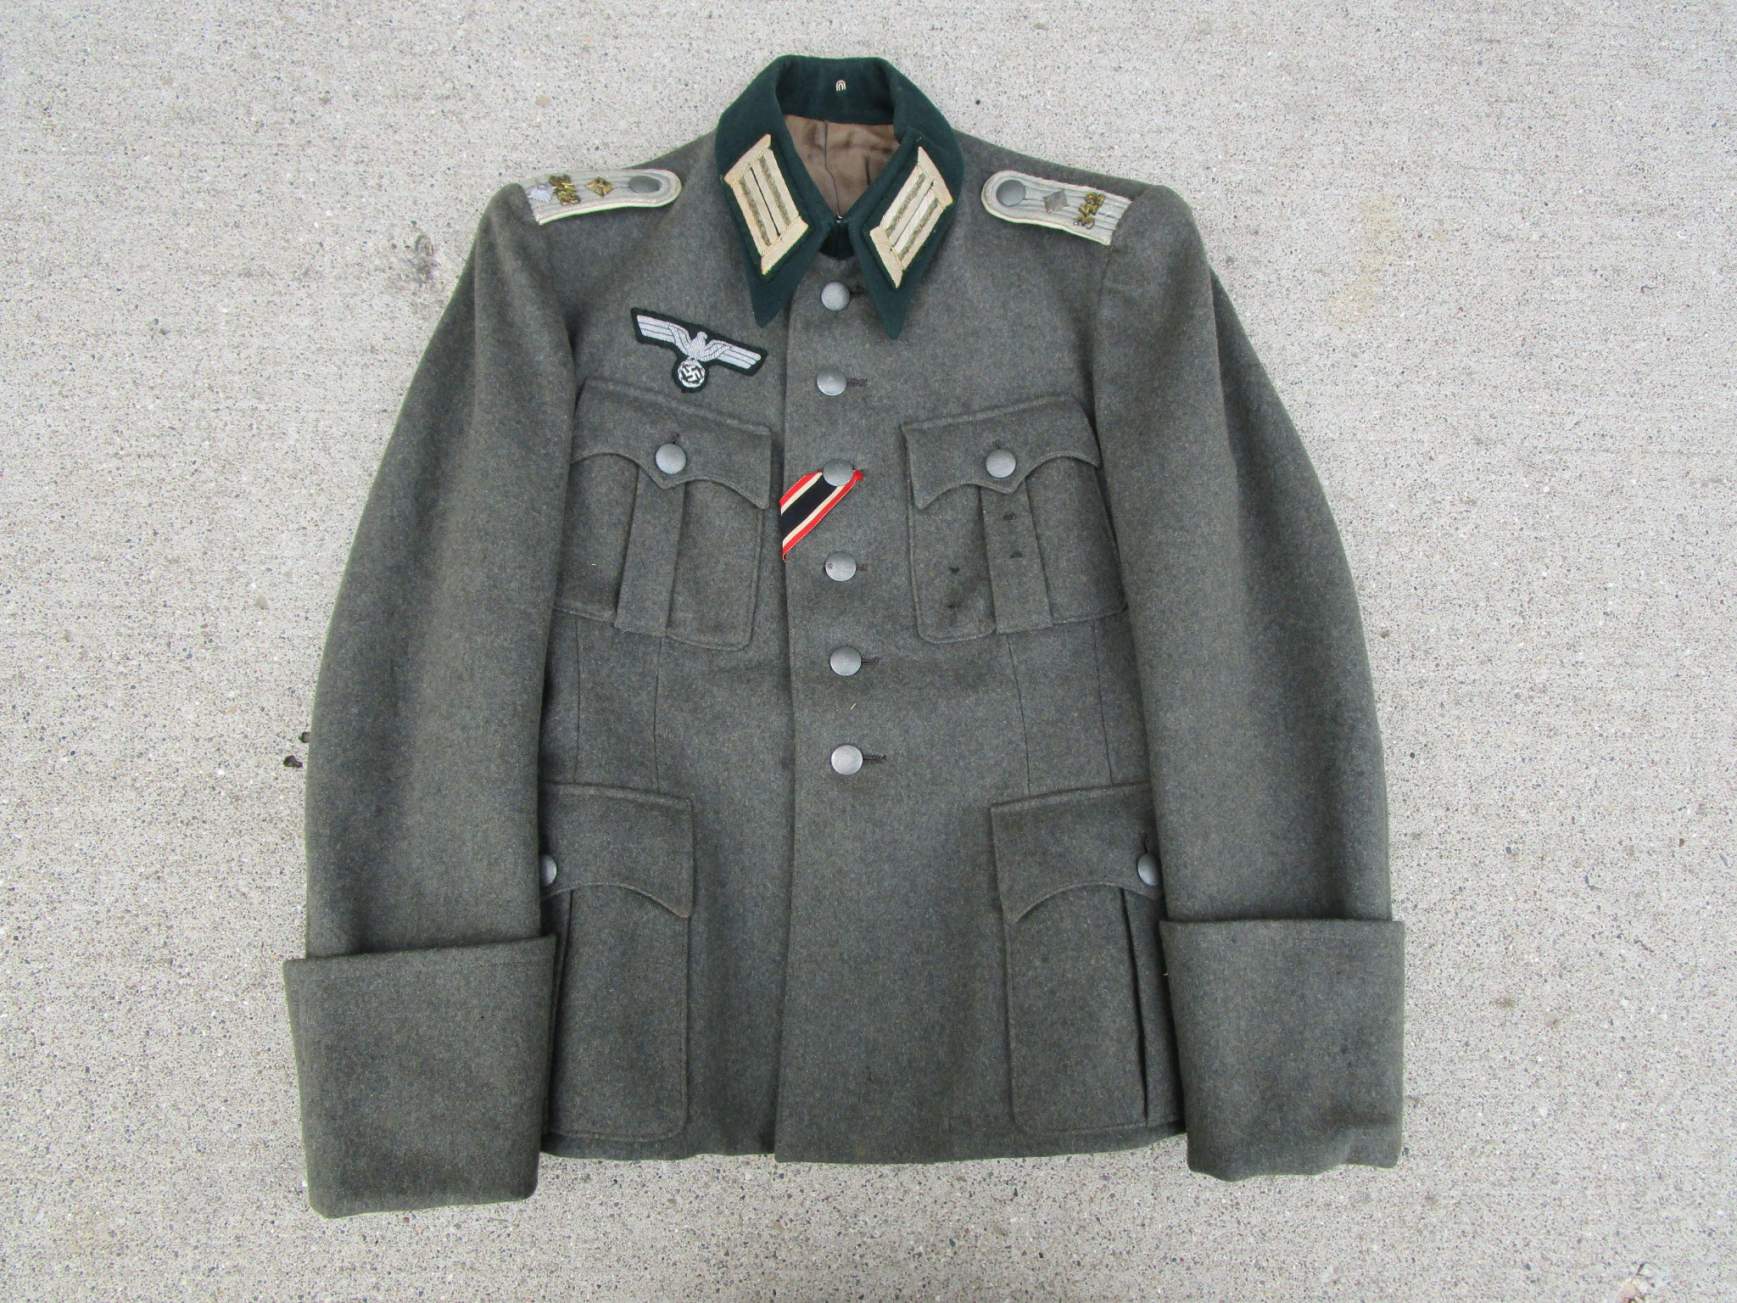 https://www.warrelics.eu/forum/attachments/heer-luftwaffe-kriegsmarine-uniforms-third-reich/1504381d1621163381-uniform-1-m36-officers-tunic-4218l.jpg